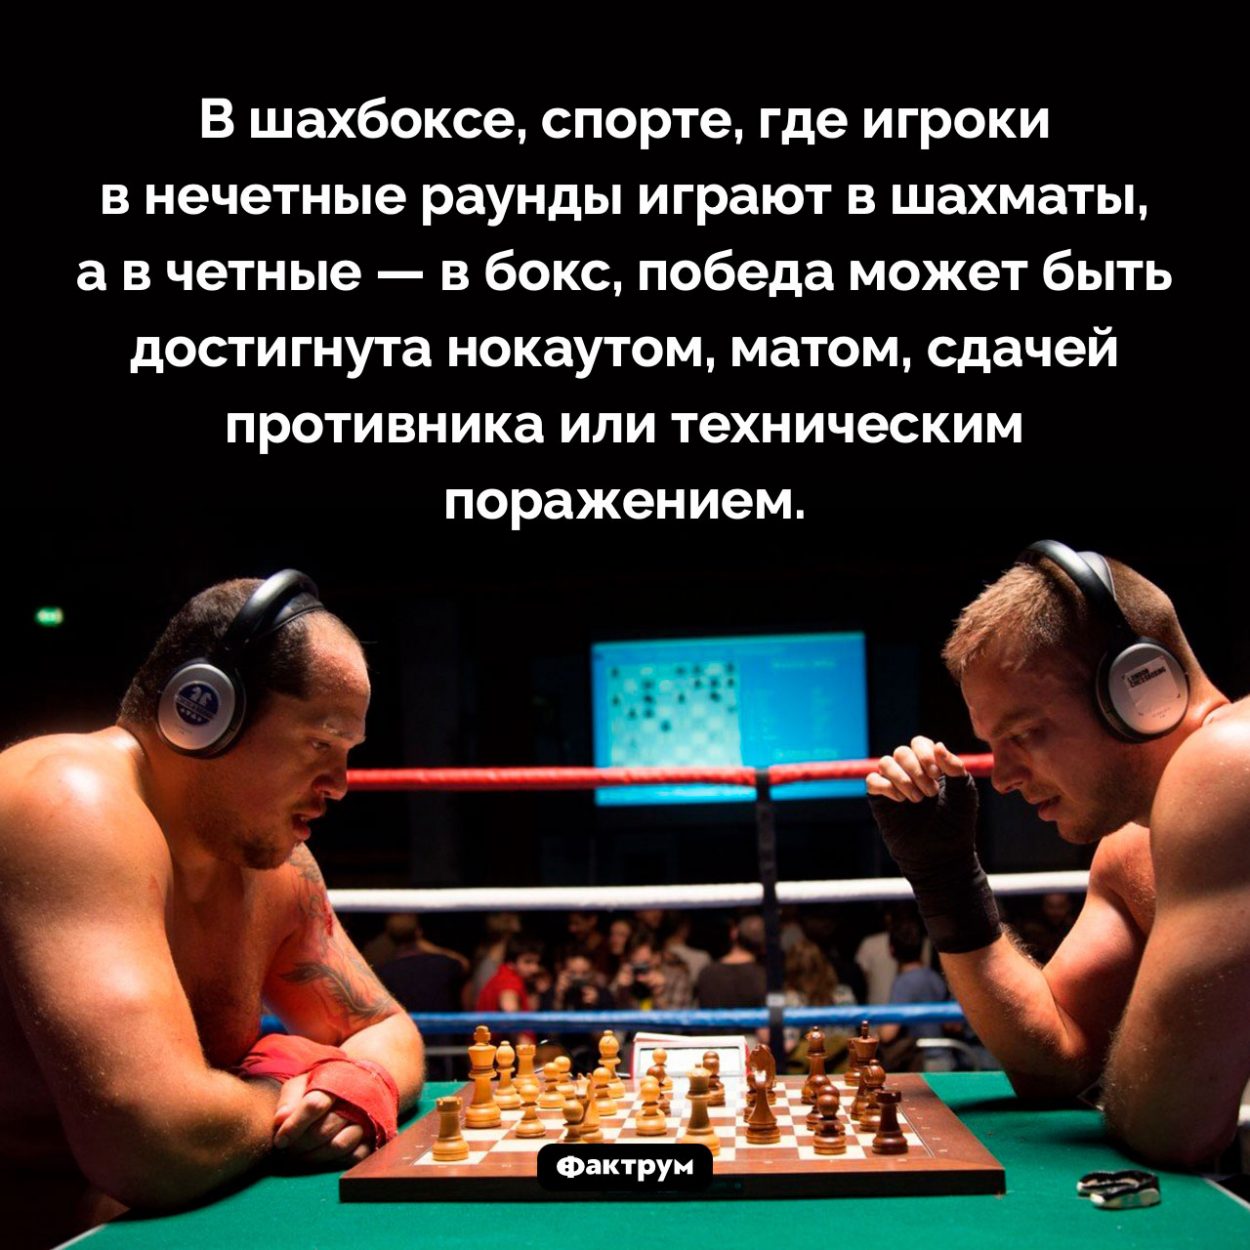 Как победить в шахбоксе. В шахбоксе, спорте, где игроки в нечетные раунды играют в шахматы, а в четные — в бокс, победа может быть достигнута нокаутом, матом, сдачей противника или техническим поражением.